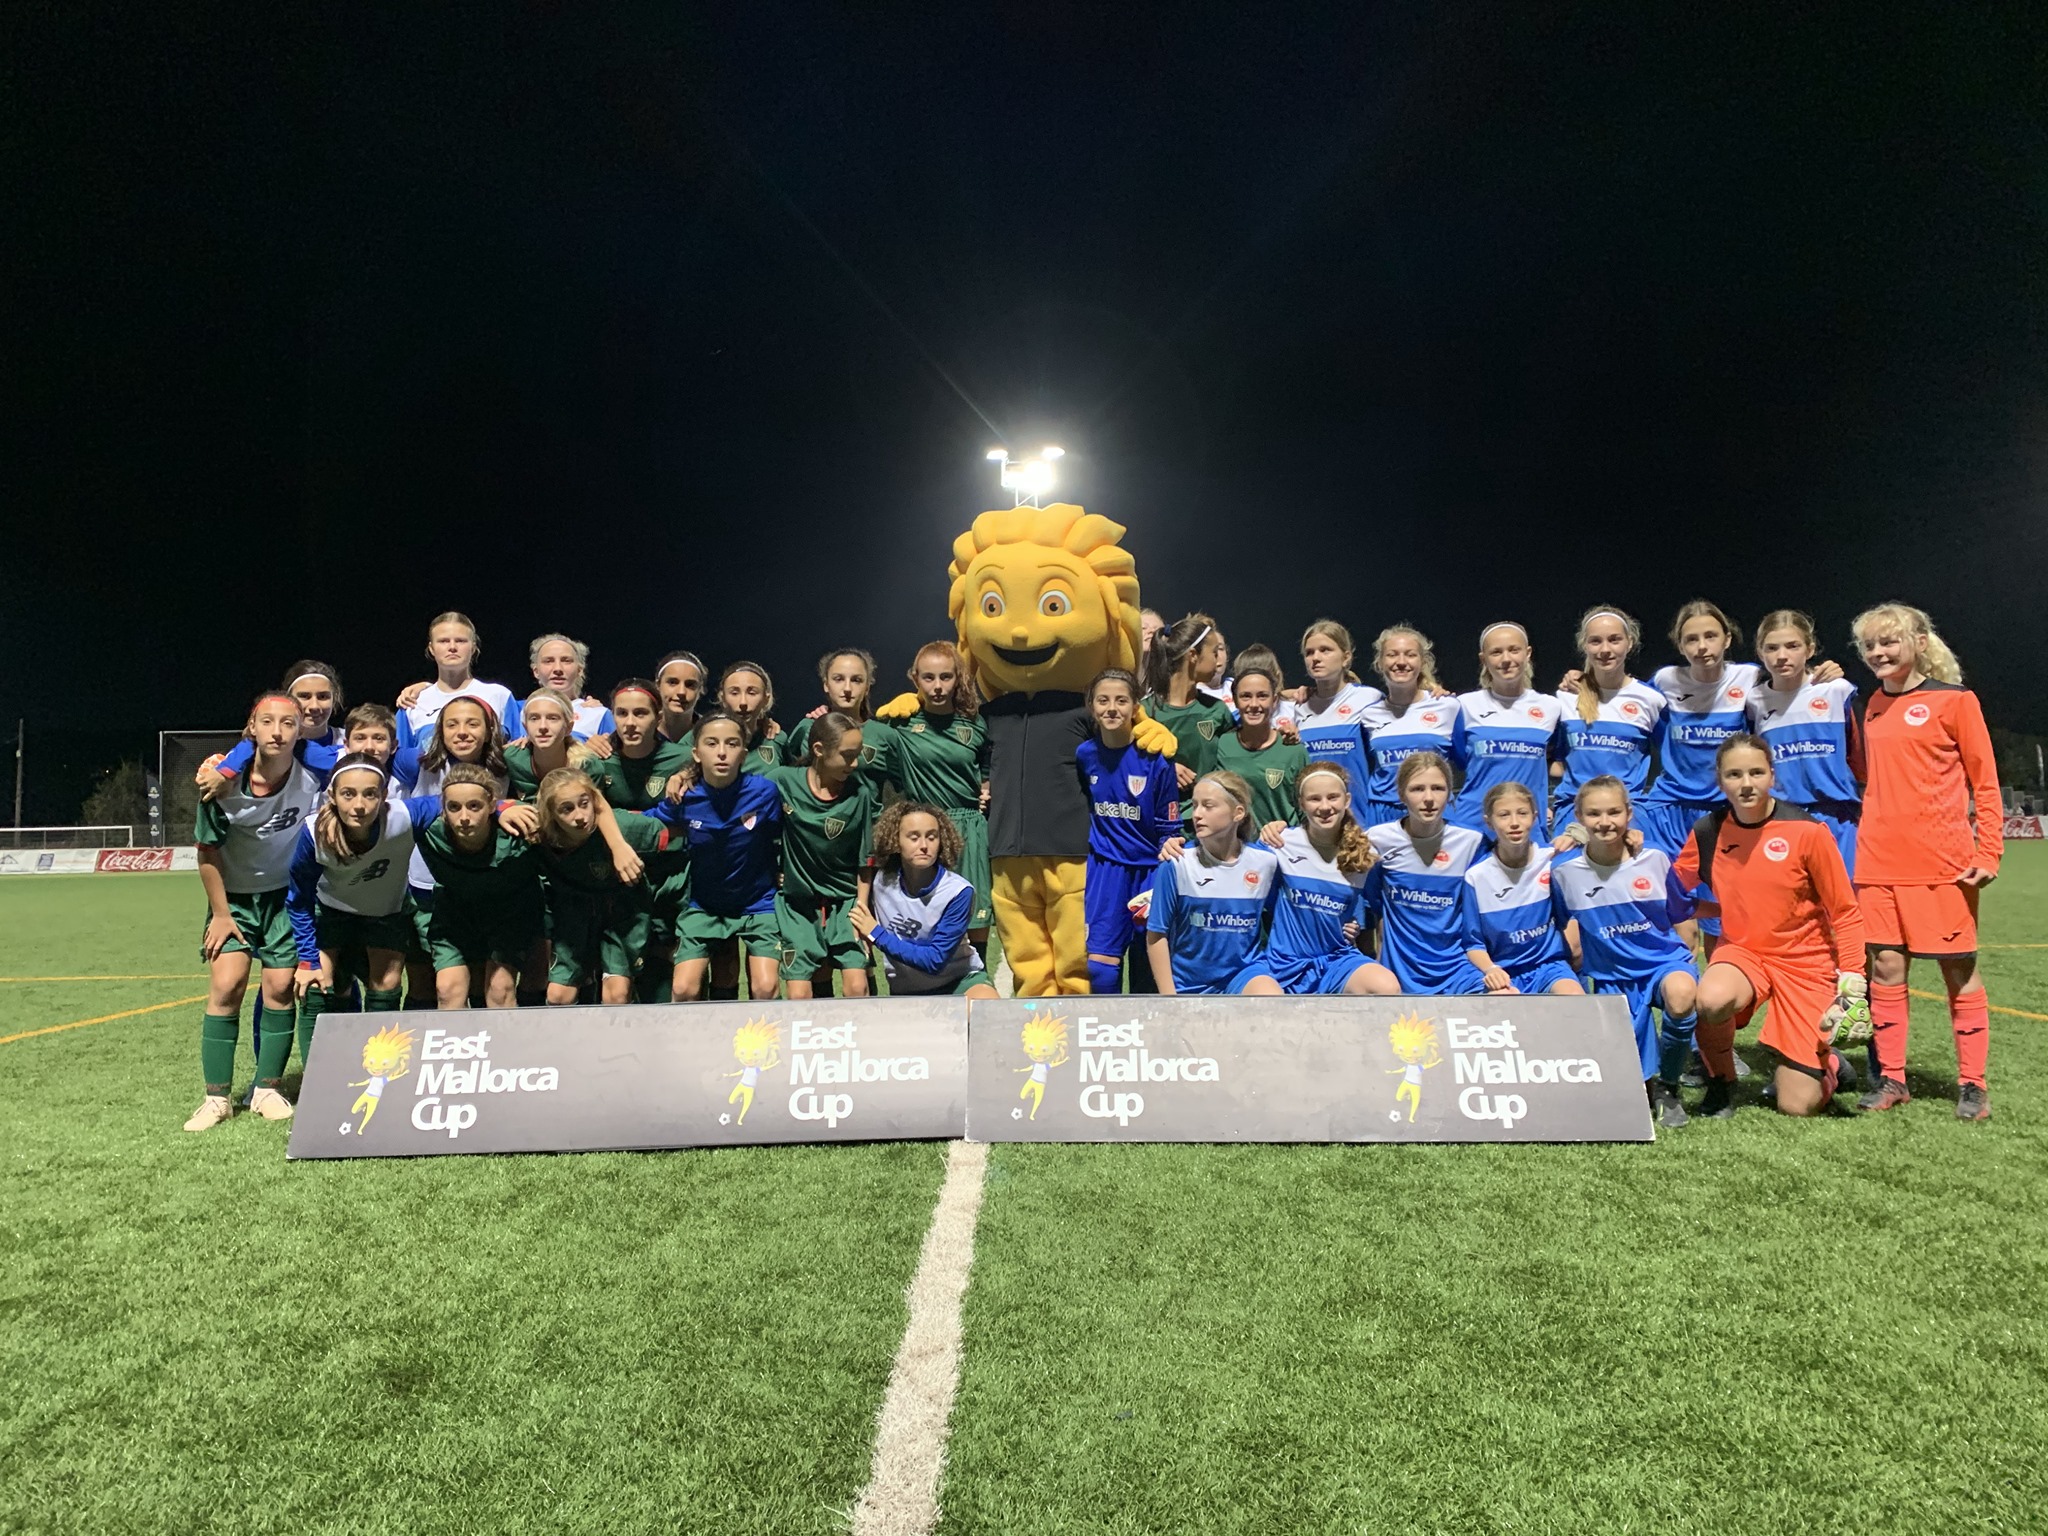 East Mallorca Girls Cup 2019 – 24-28 oktober 2019